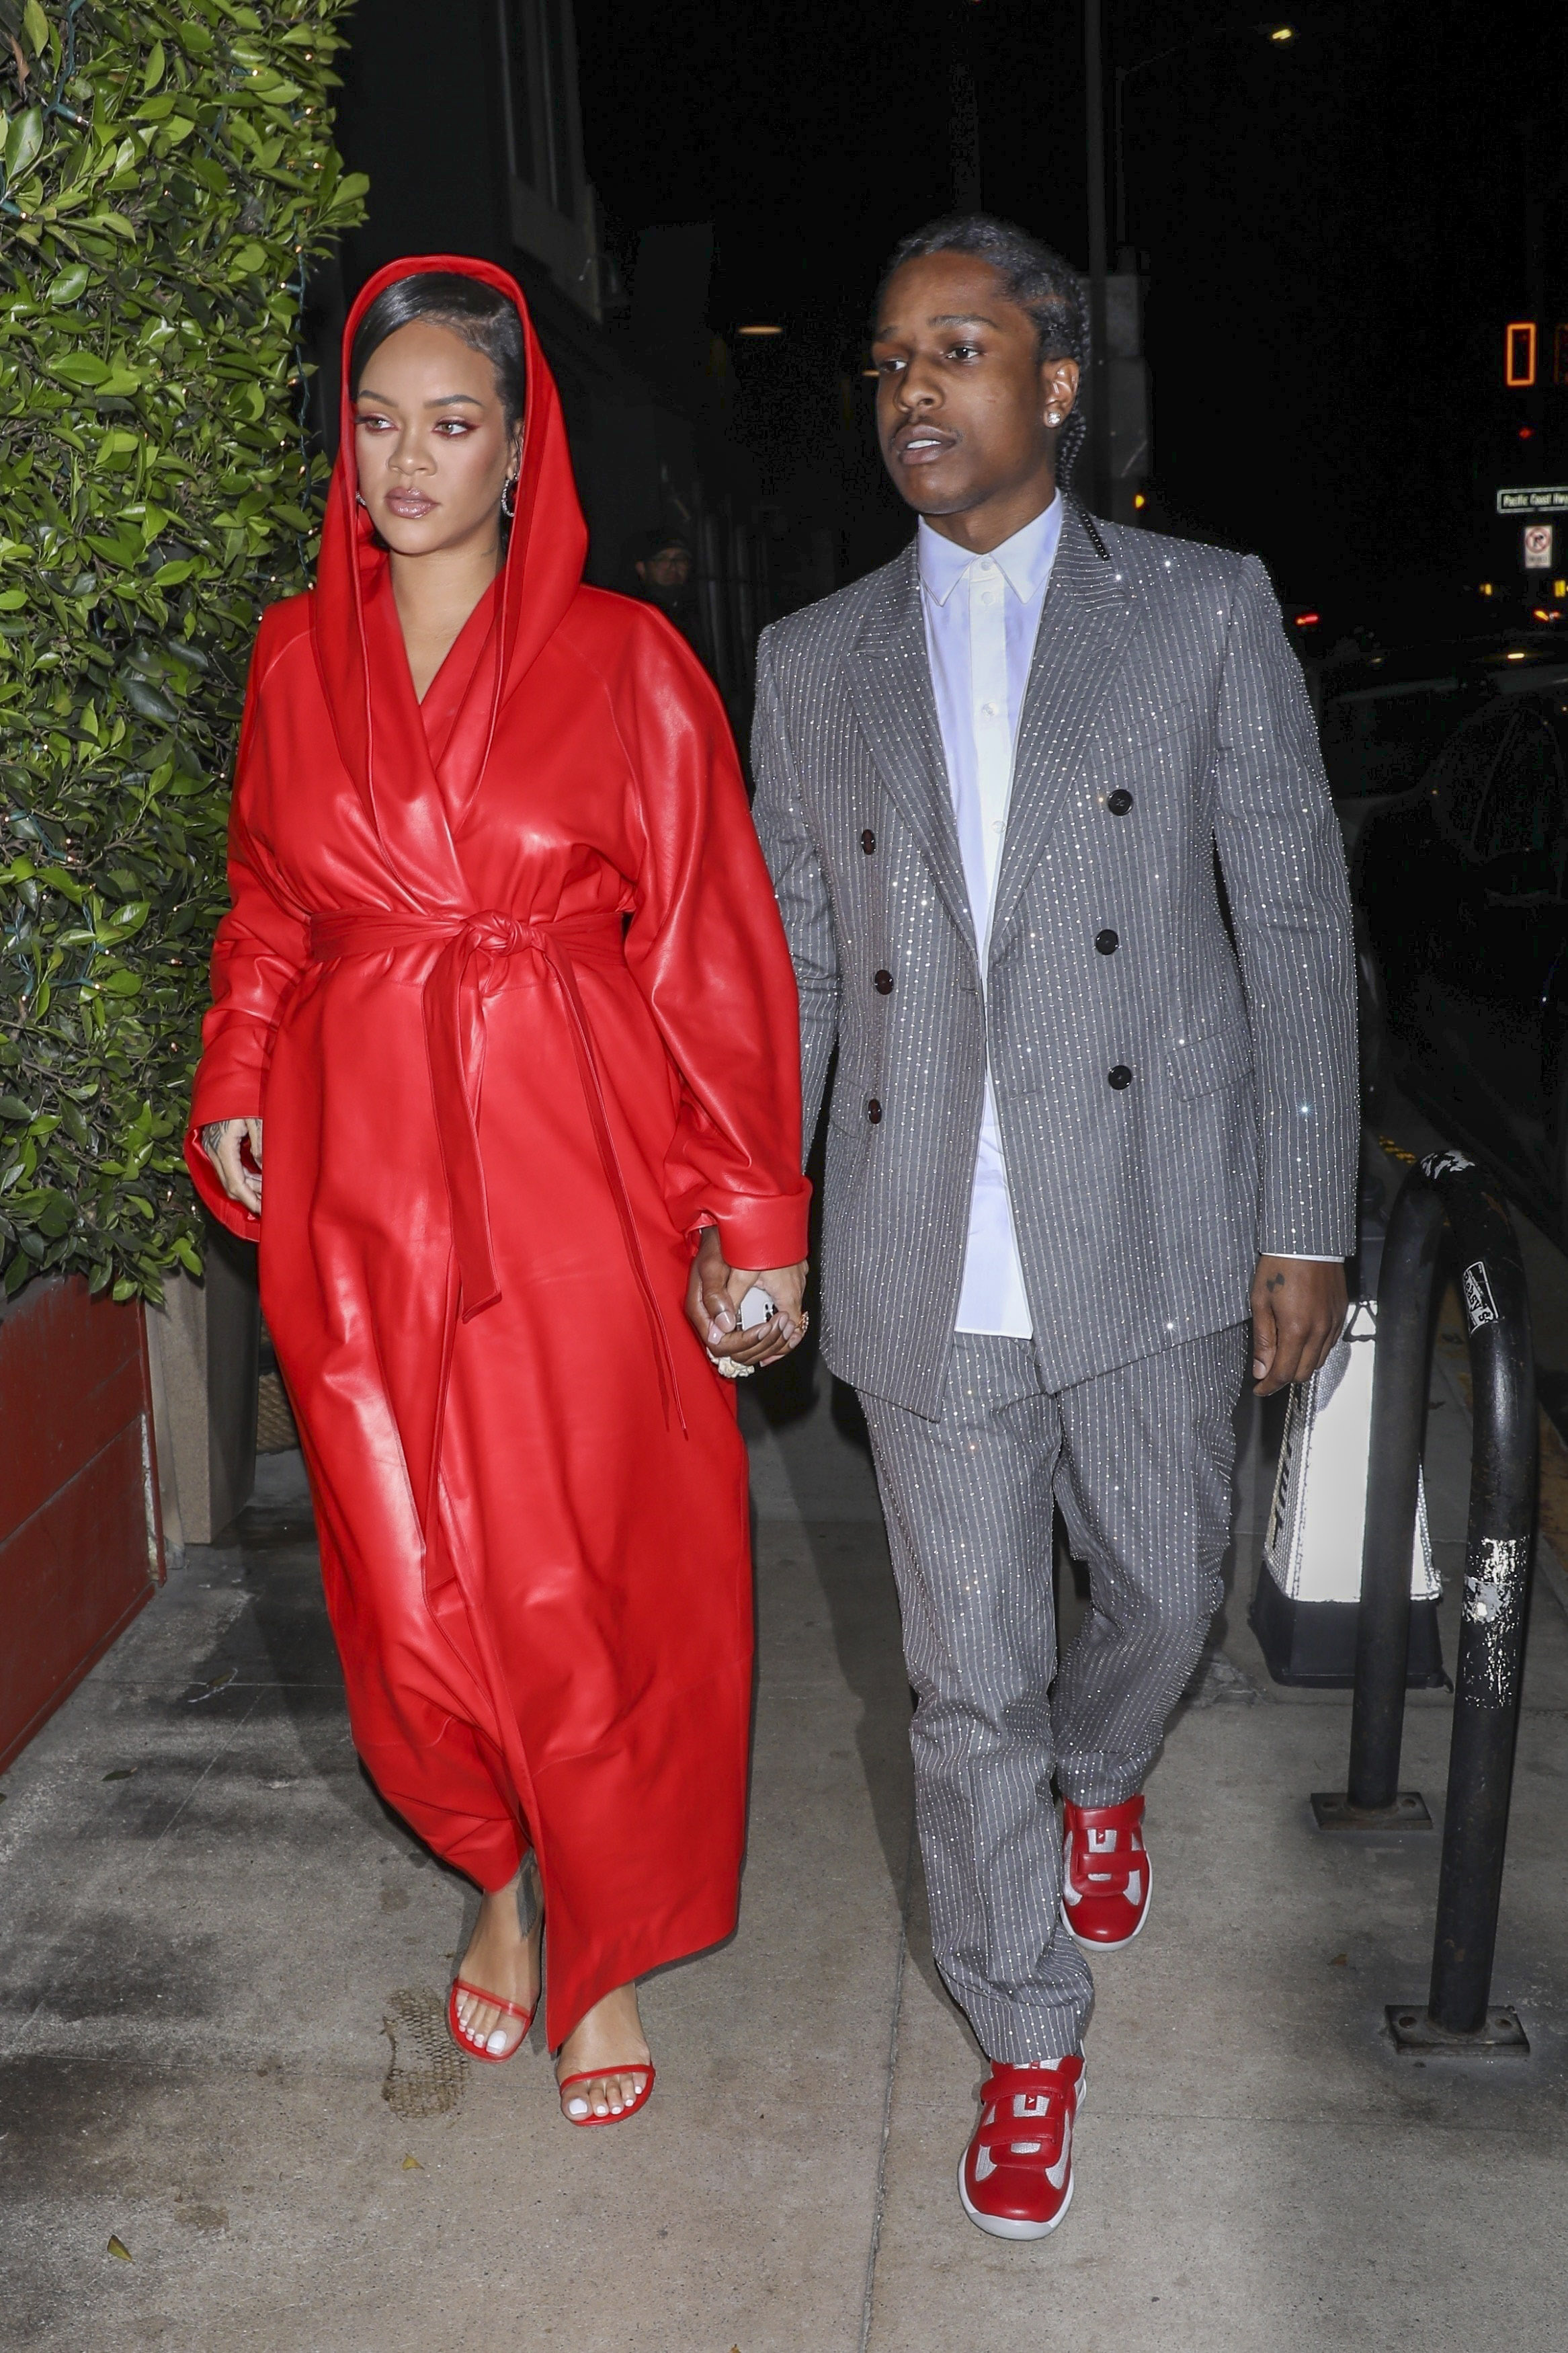 Noche romántica. Rihanna y A$AP Rocky fueron a comer al exclusivo restaurante Giorgio Baldi, en Santa Mónica. Para ello, la artista eligió un tapado rojo de cuero y llevó puesta la capucha. El rapero, en tanto, lució un traje con brillos